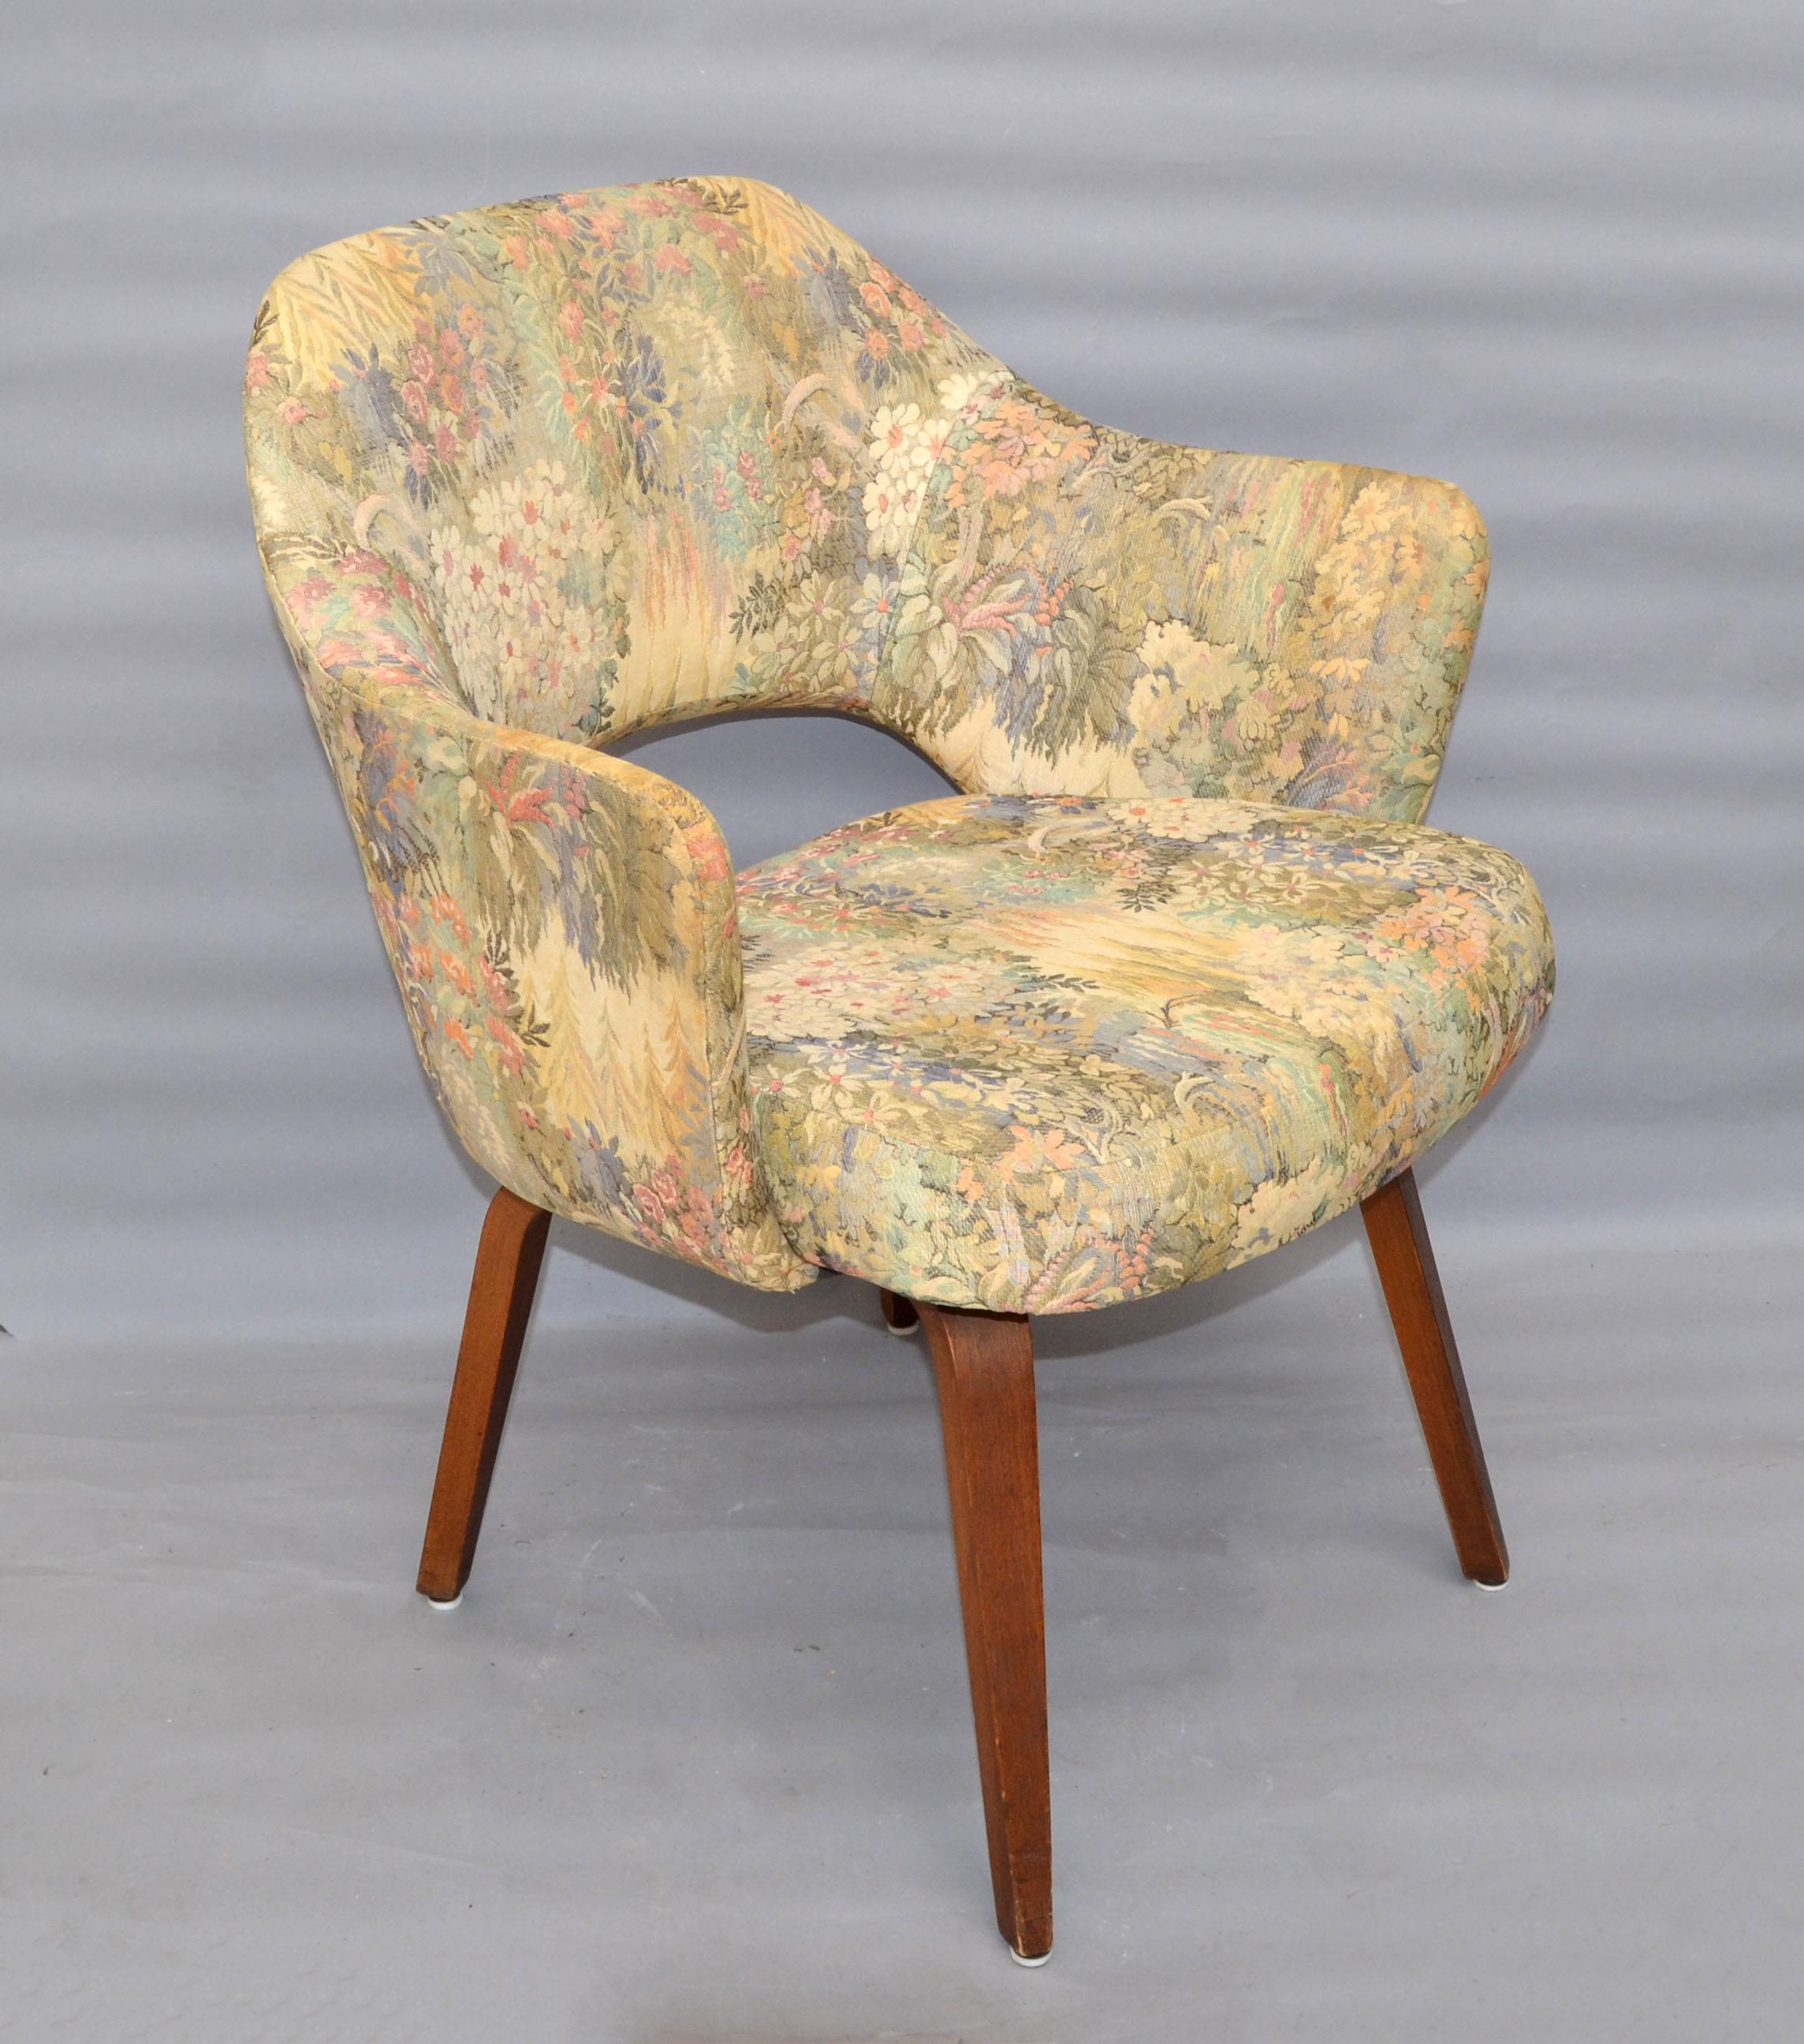 Set of 8 Eeero Saarinen Executive Knoll Dining Chairs Original Fabric Wood Legs 1